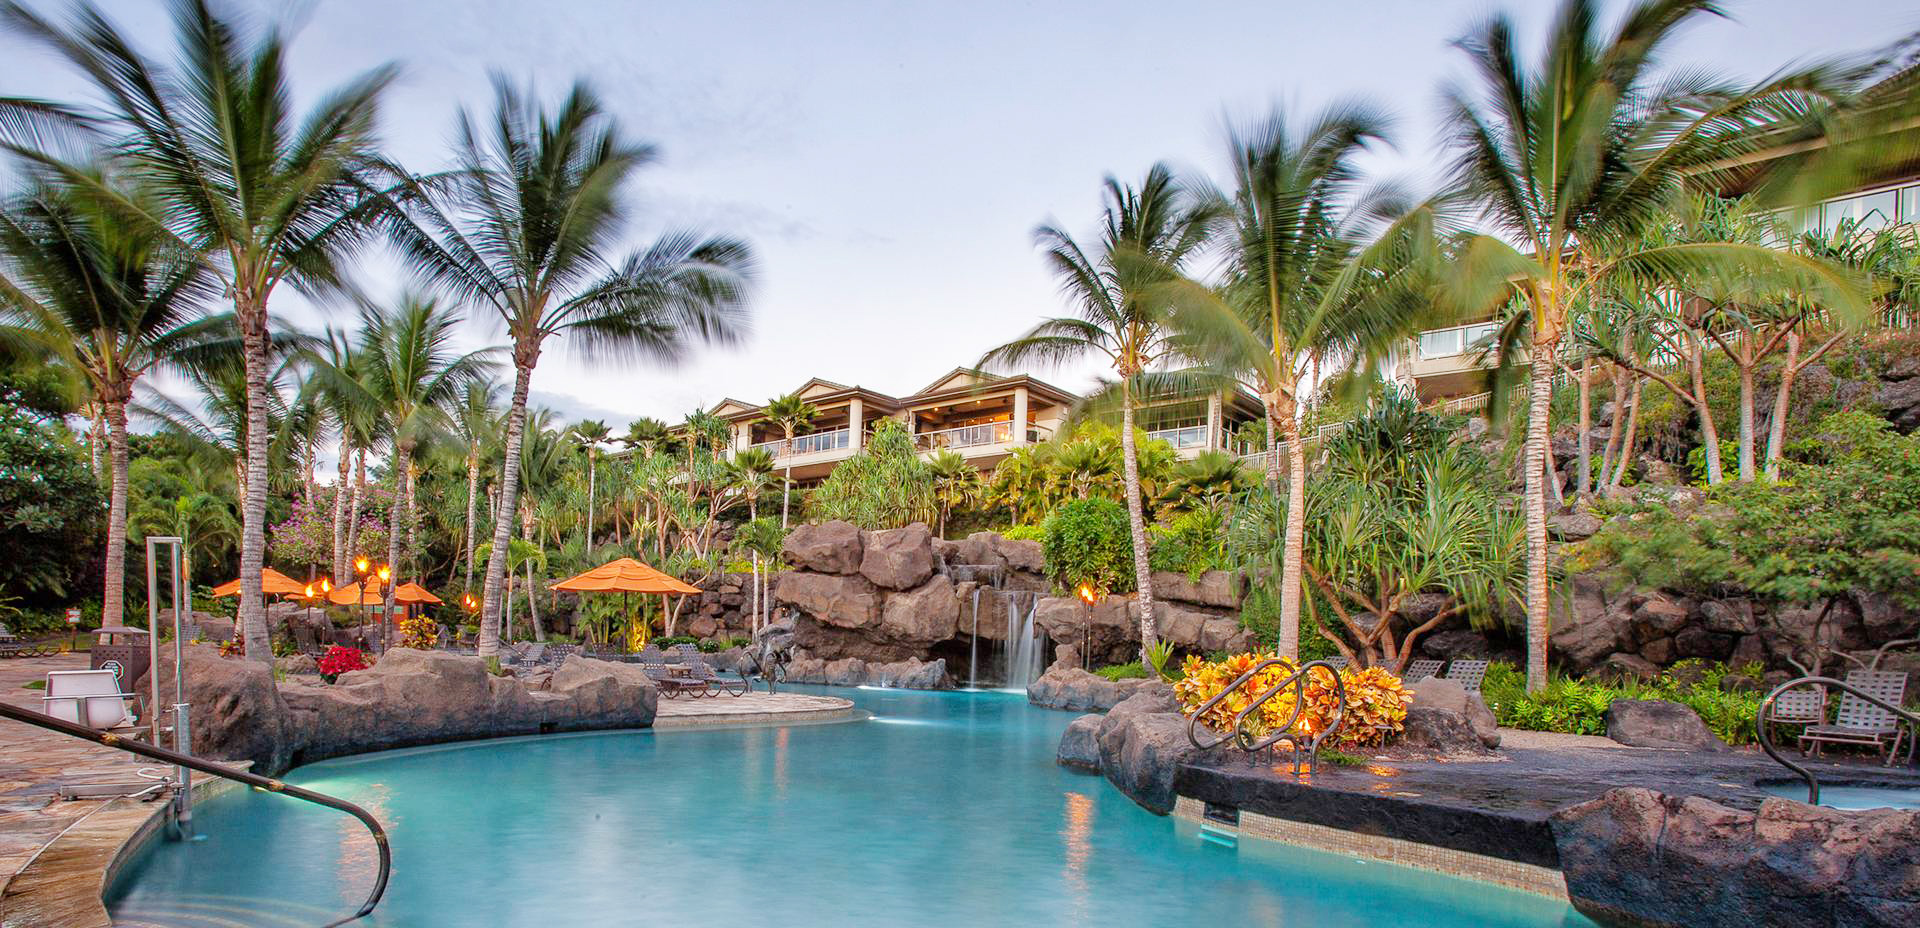 Ho'olei Resort, Hawaii